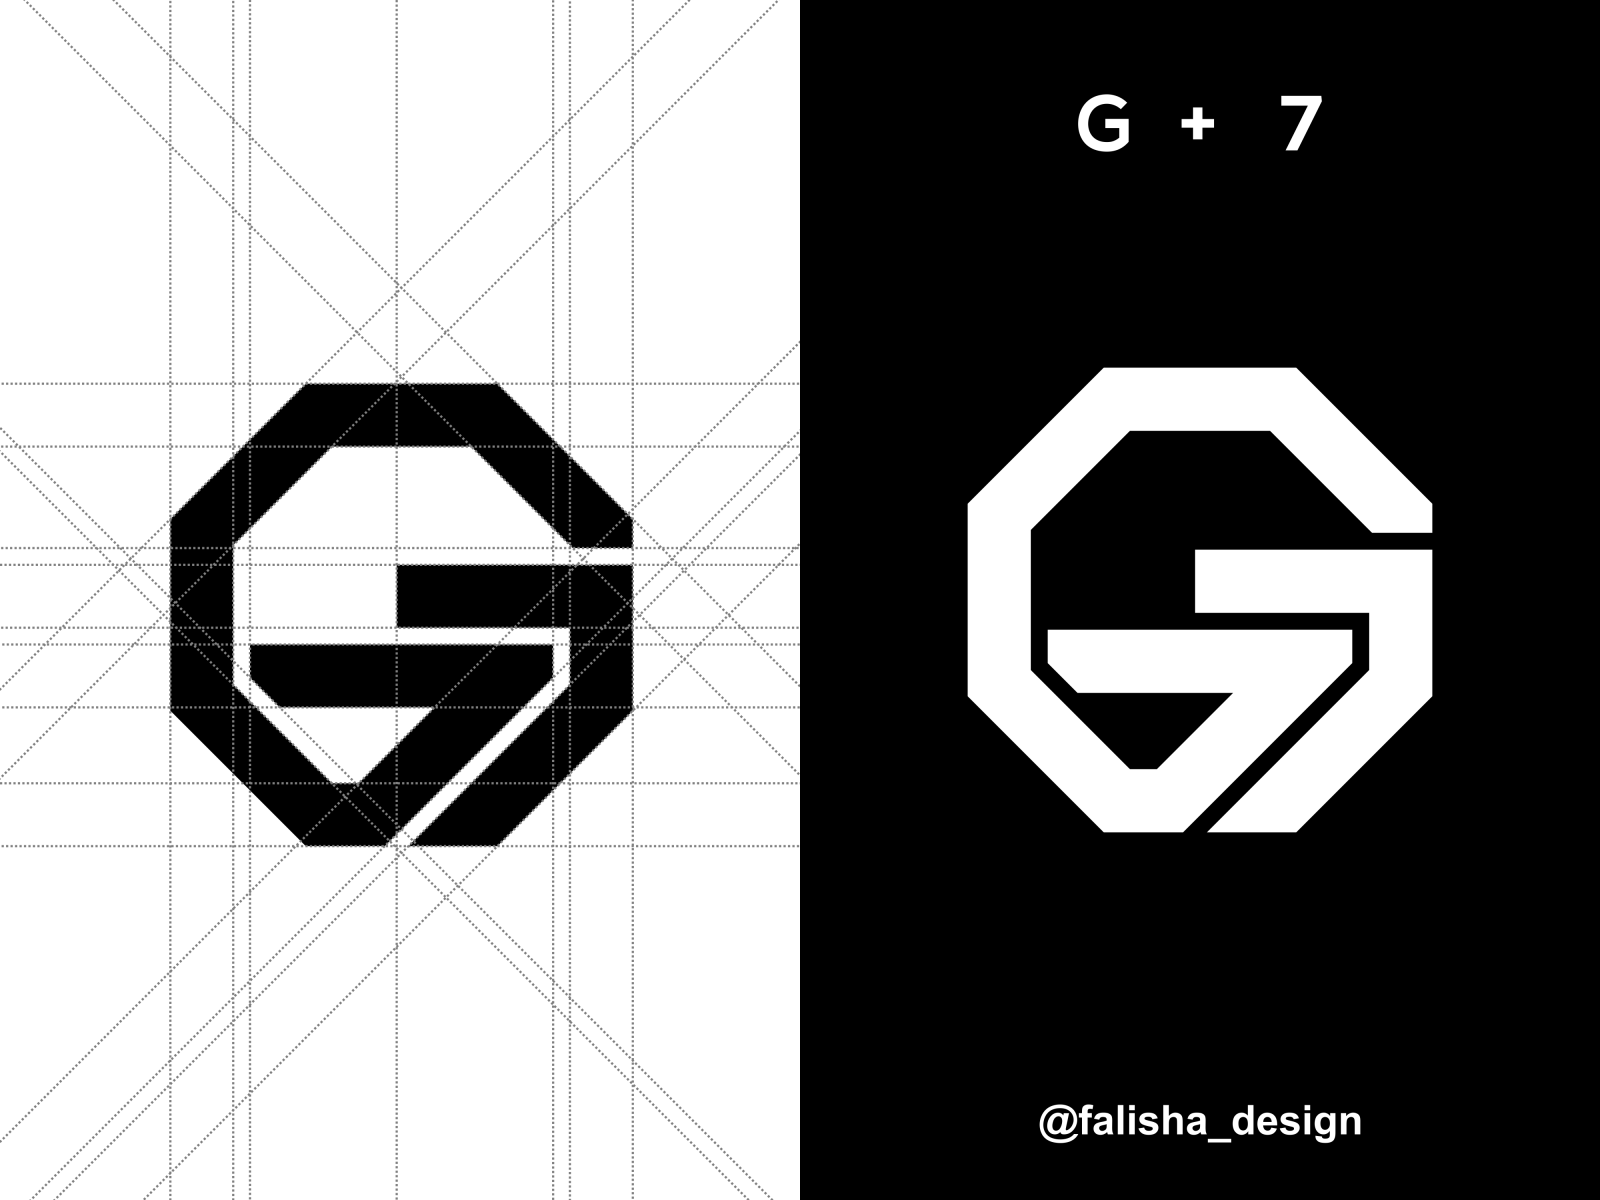 g7 logo idea.